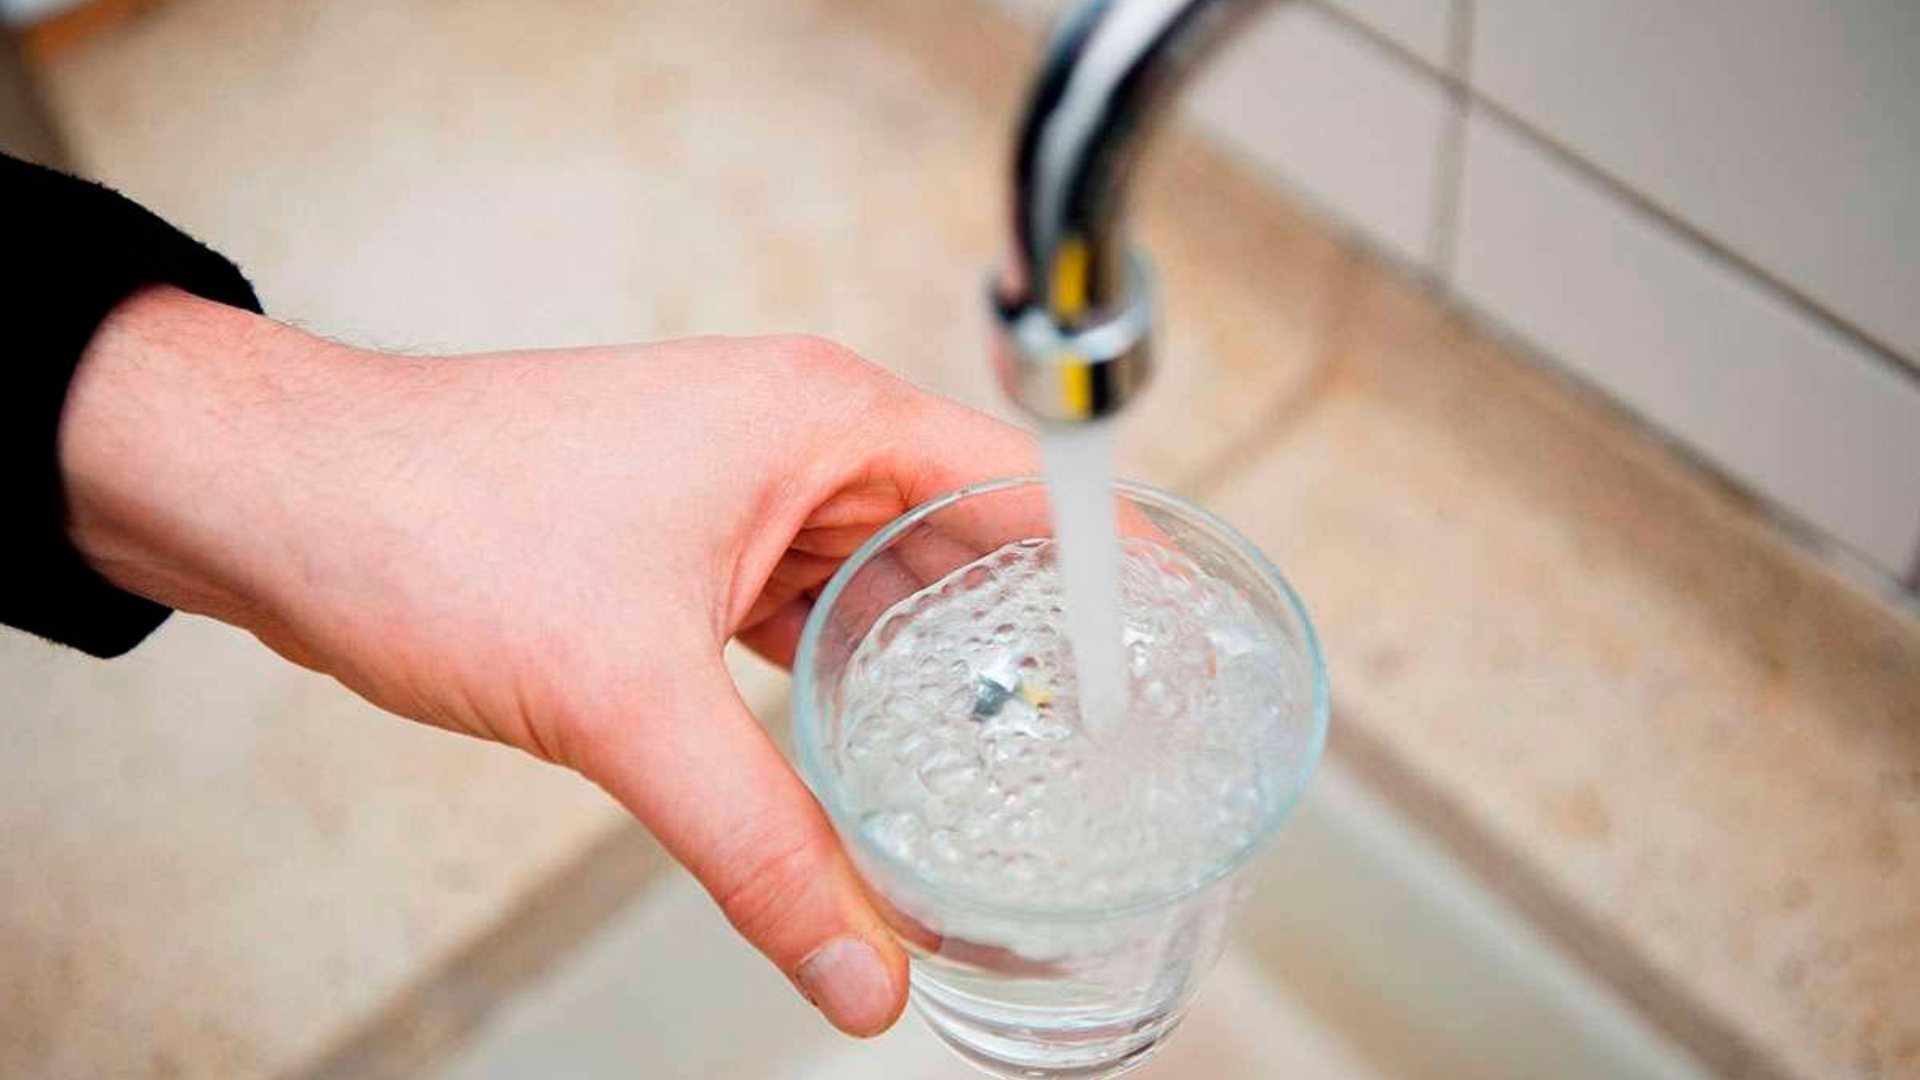 Sedapal pide a usuarios evitar uso irracional del agua ante posible escasez por falta de lluvias